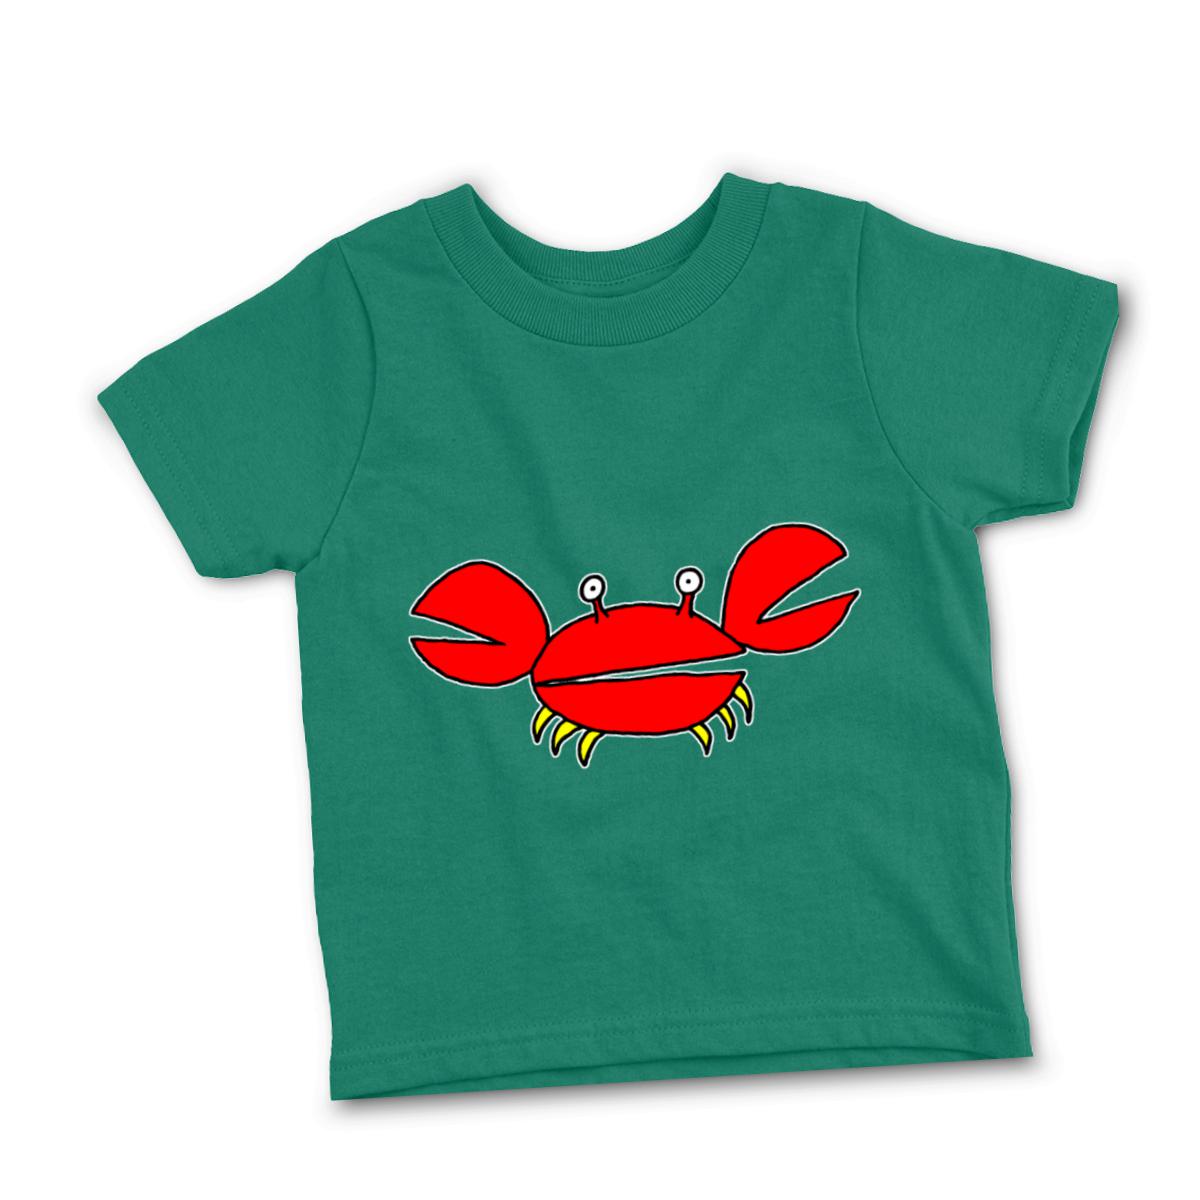 Crab Toddler Tee 4T kelly